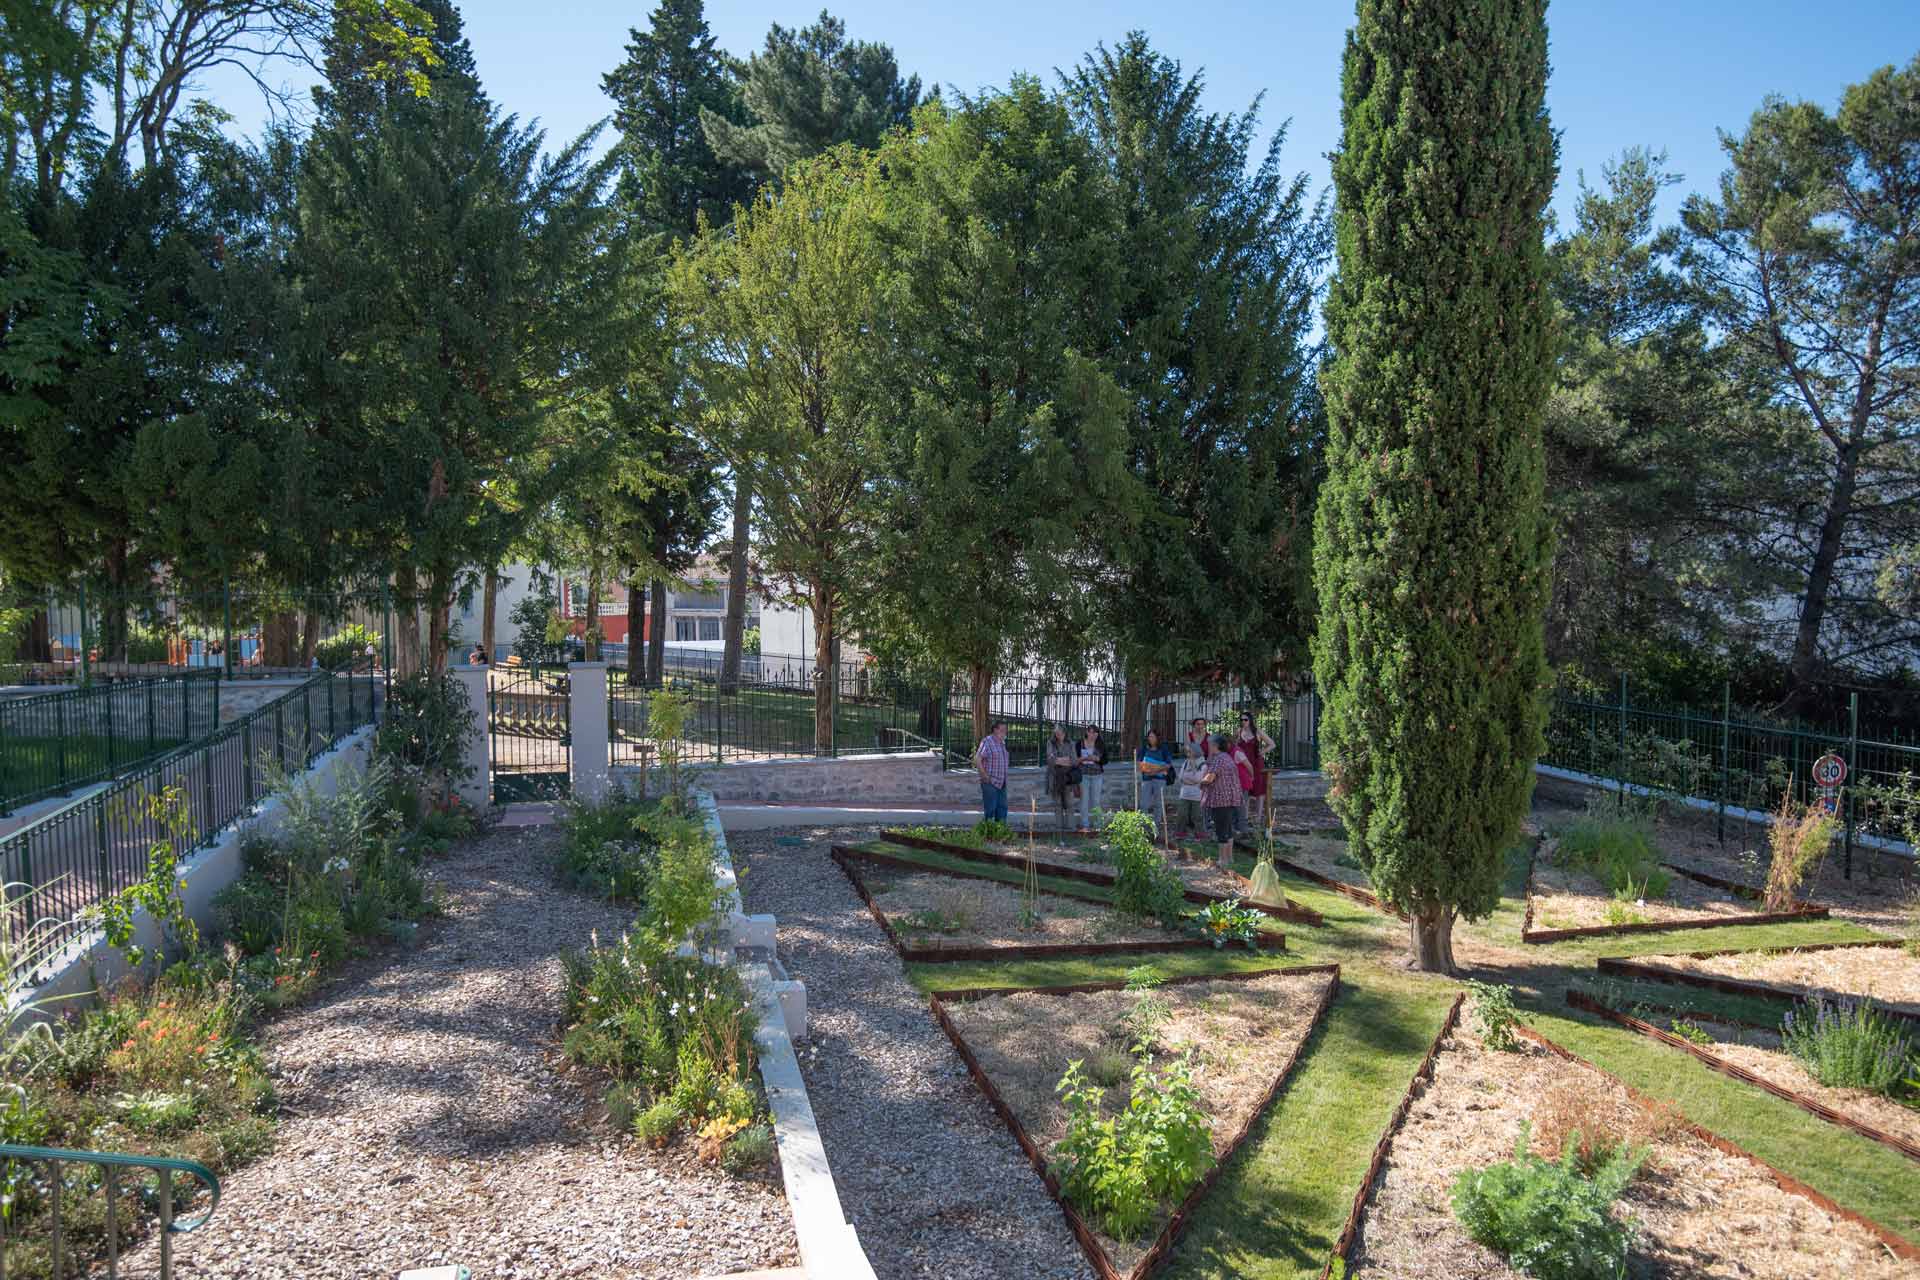 Le jardin pédagogique d’Alès, au cœur du Bosquet, invite les citoyens à développer une science participative, c’est-à-dire à prendre part aux activités du jardin dans le but de partager les connaissances et les expériences vécues.